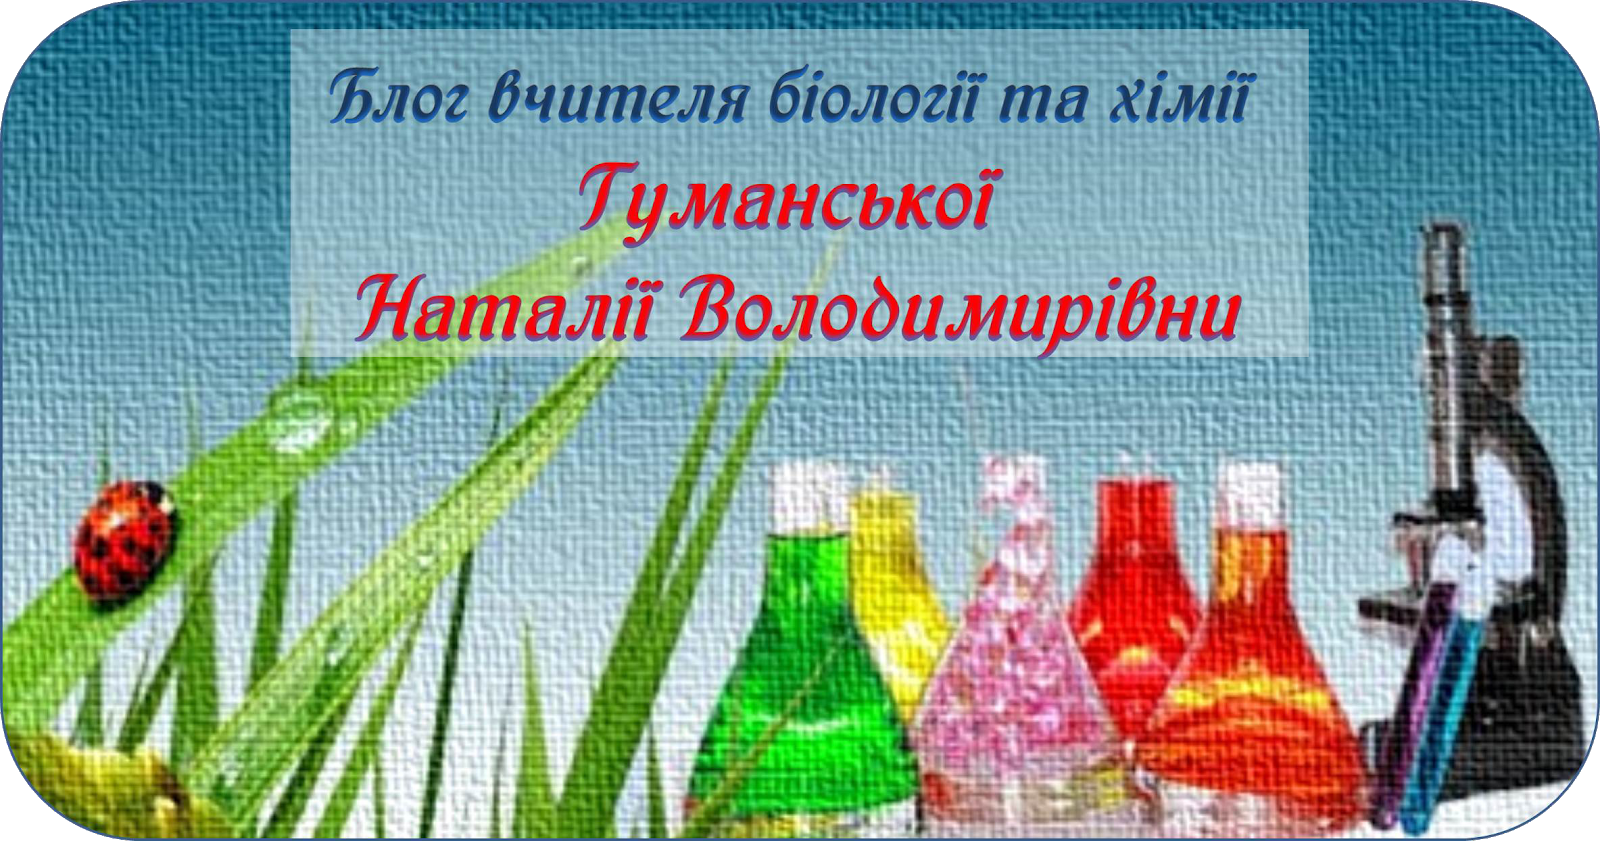 Блог вчителя біології та хімії Гуманської Наталії Володимирівни